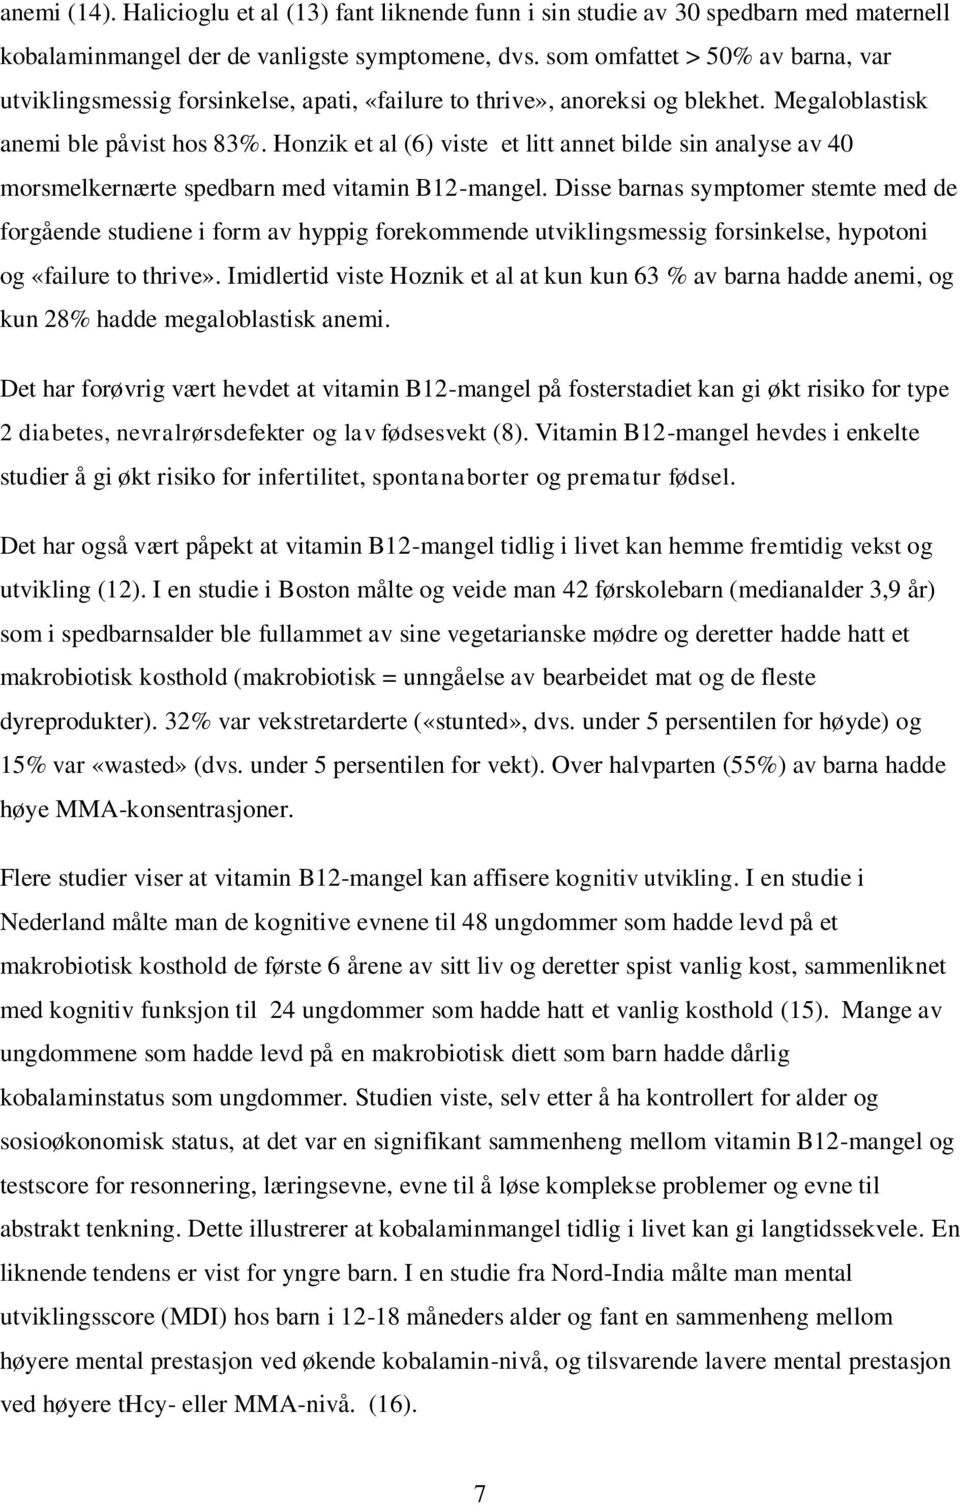 Honzik et al (6) viste et litt annet bilde sin analyse av 40 morsmelkernærte spedbarn med vitamin B12-mangel.